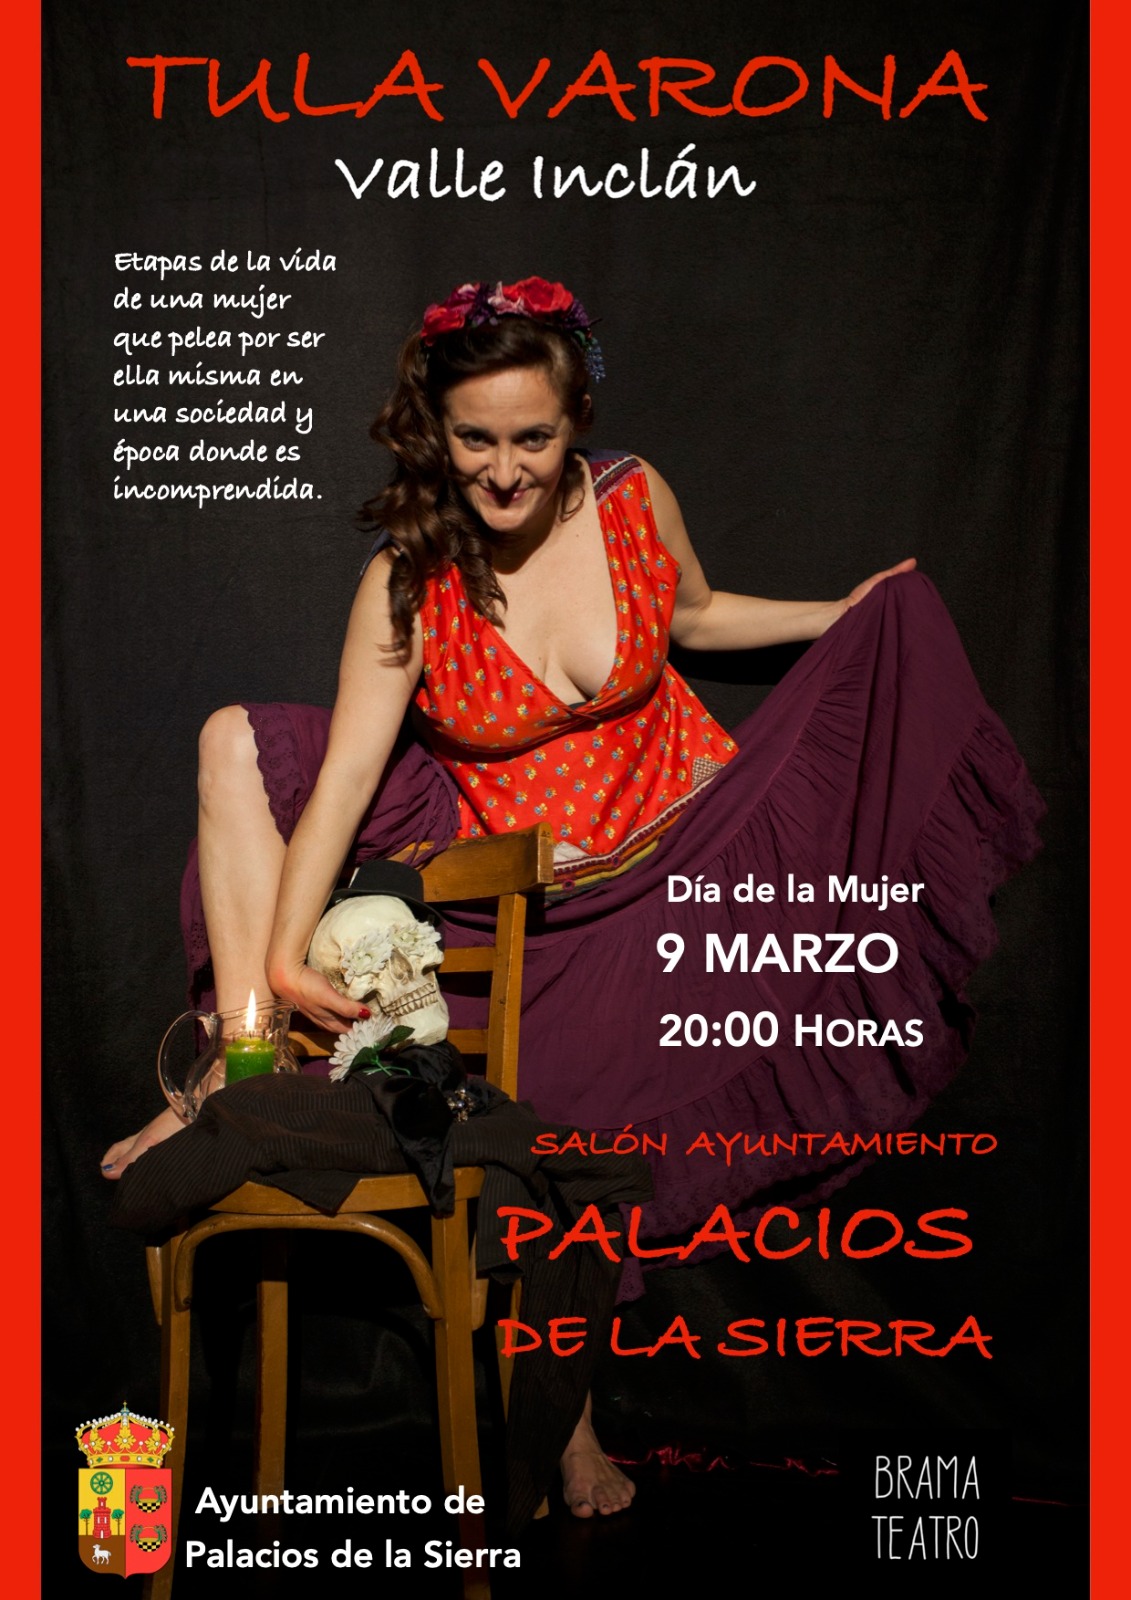 Teatro Dia de la Mujer: Tula Varona - Valle Inclán